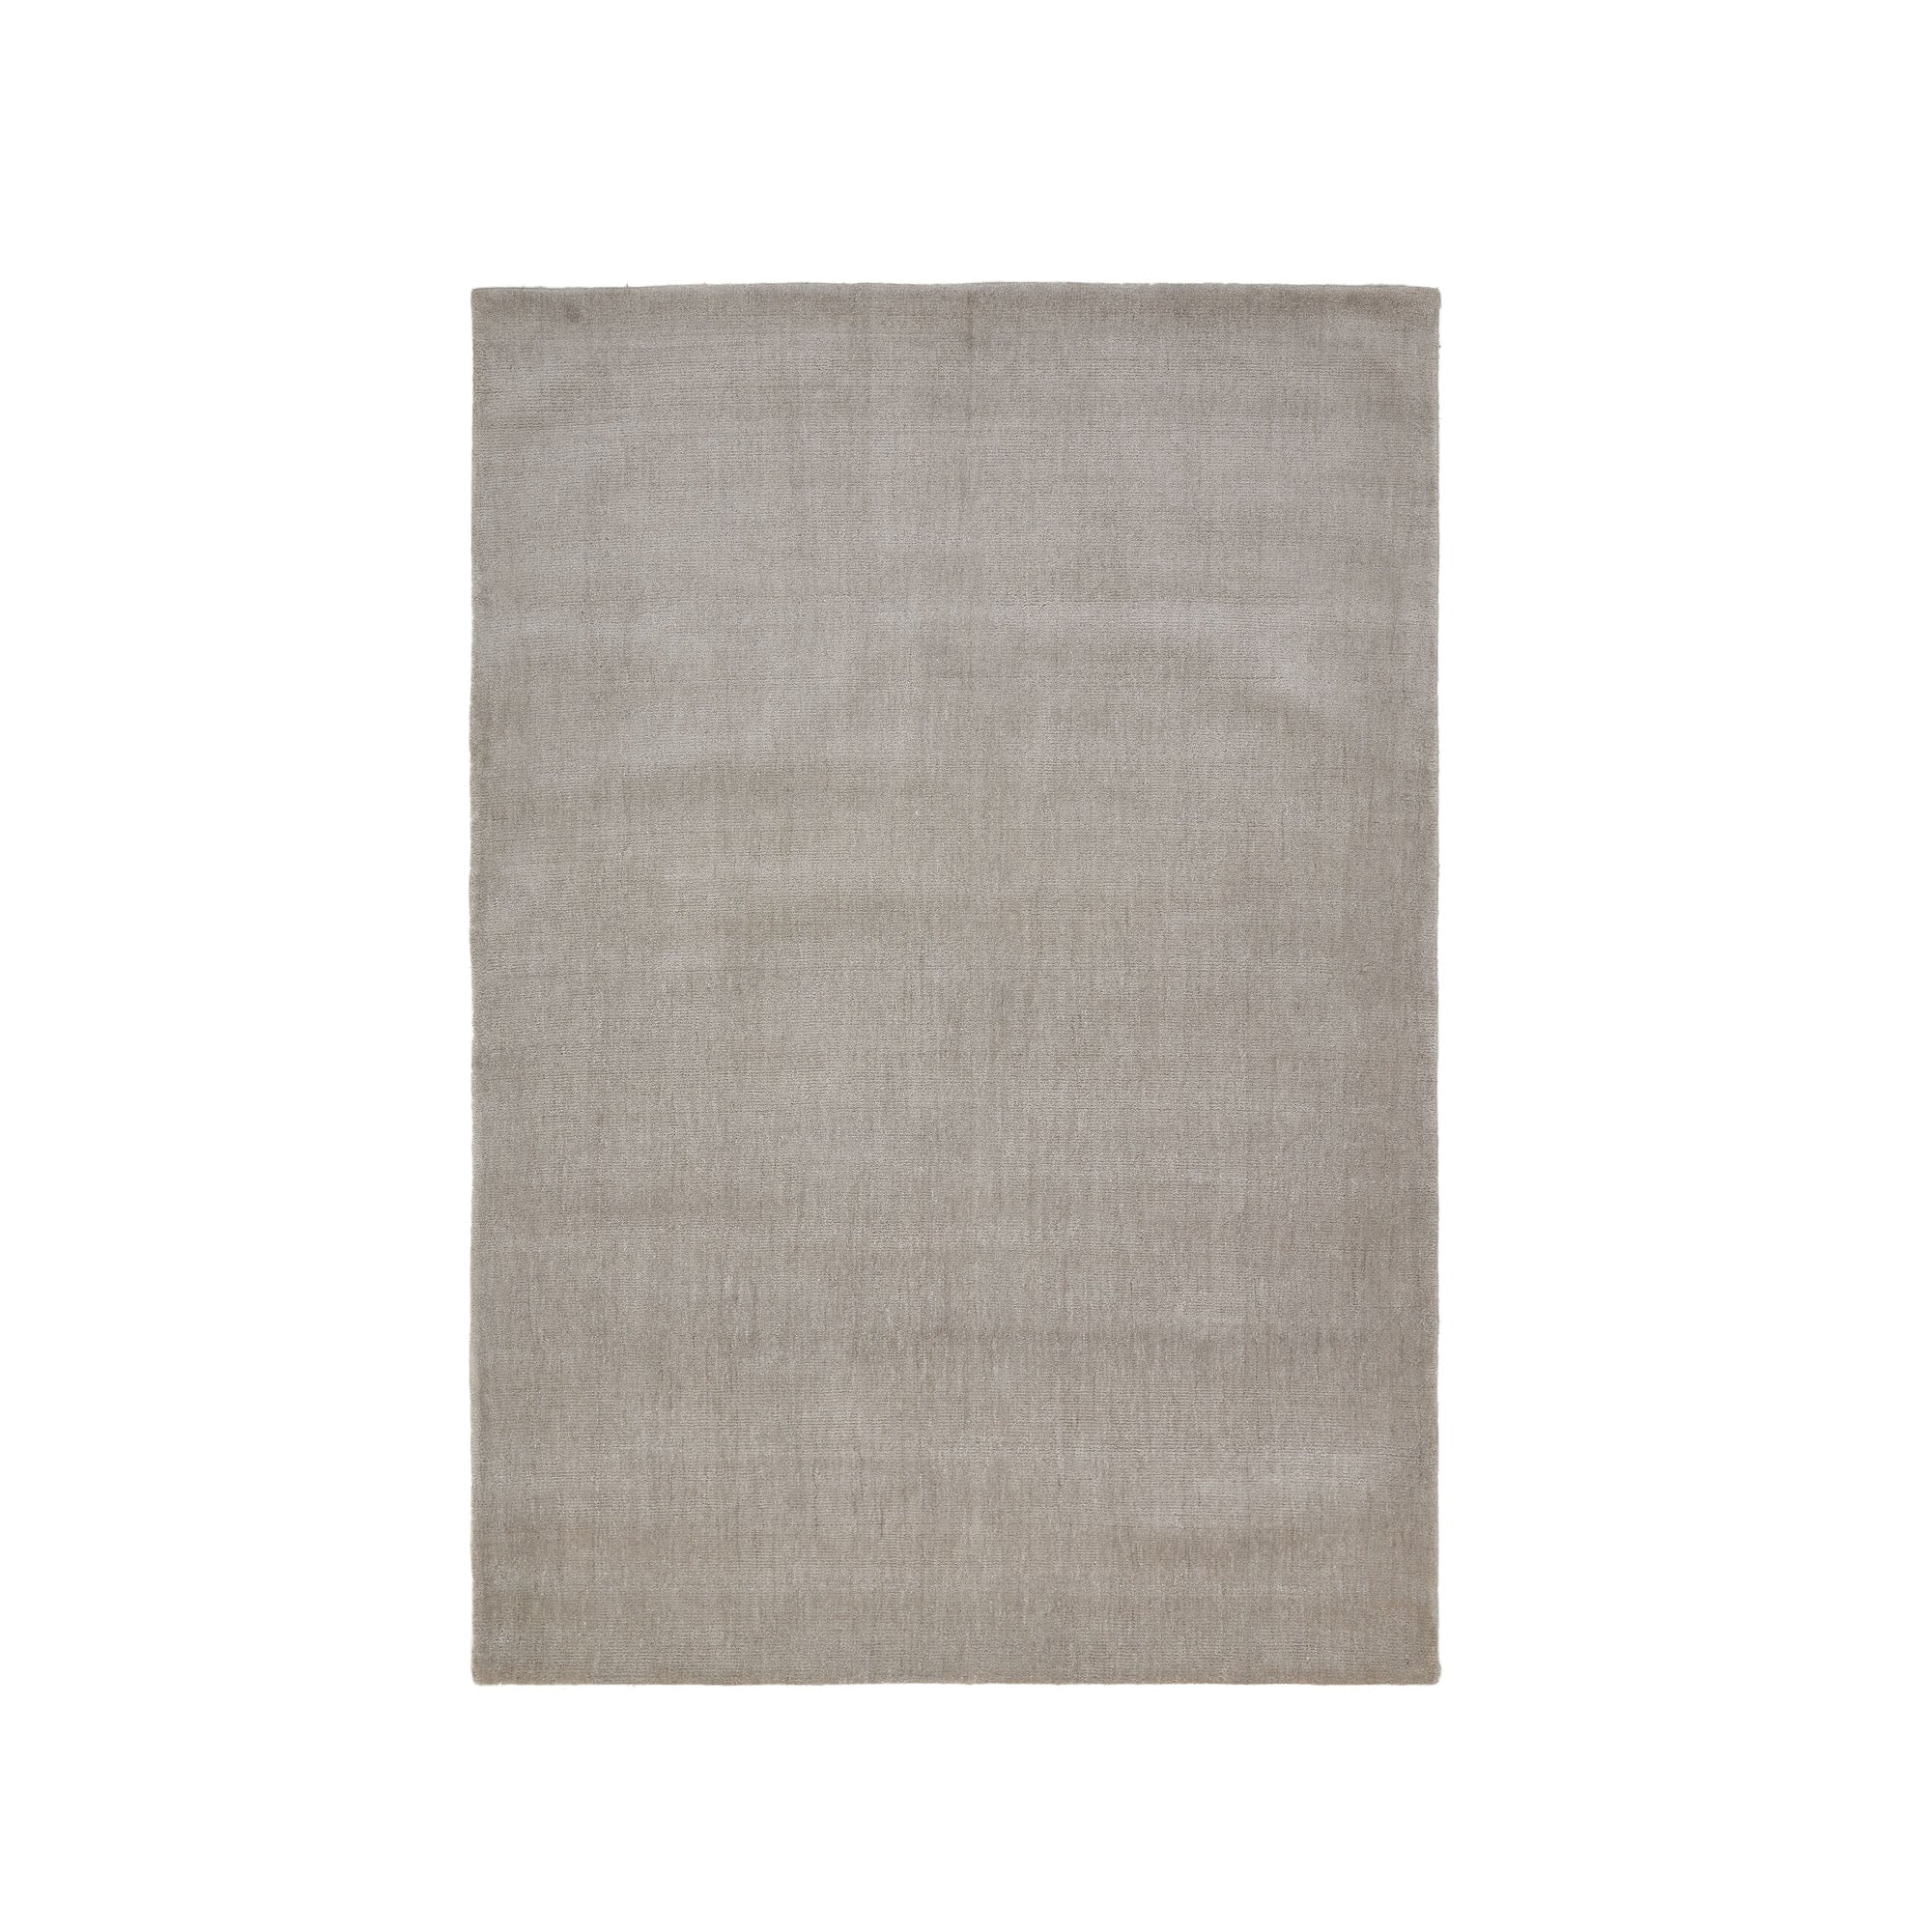 Empuries rug in grey, 160 x 230 cm